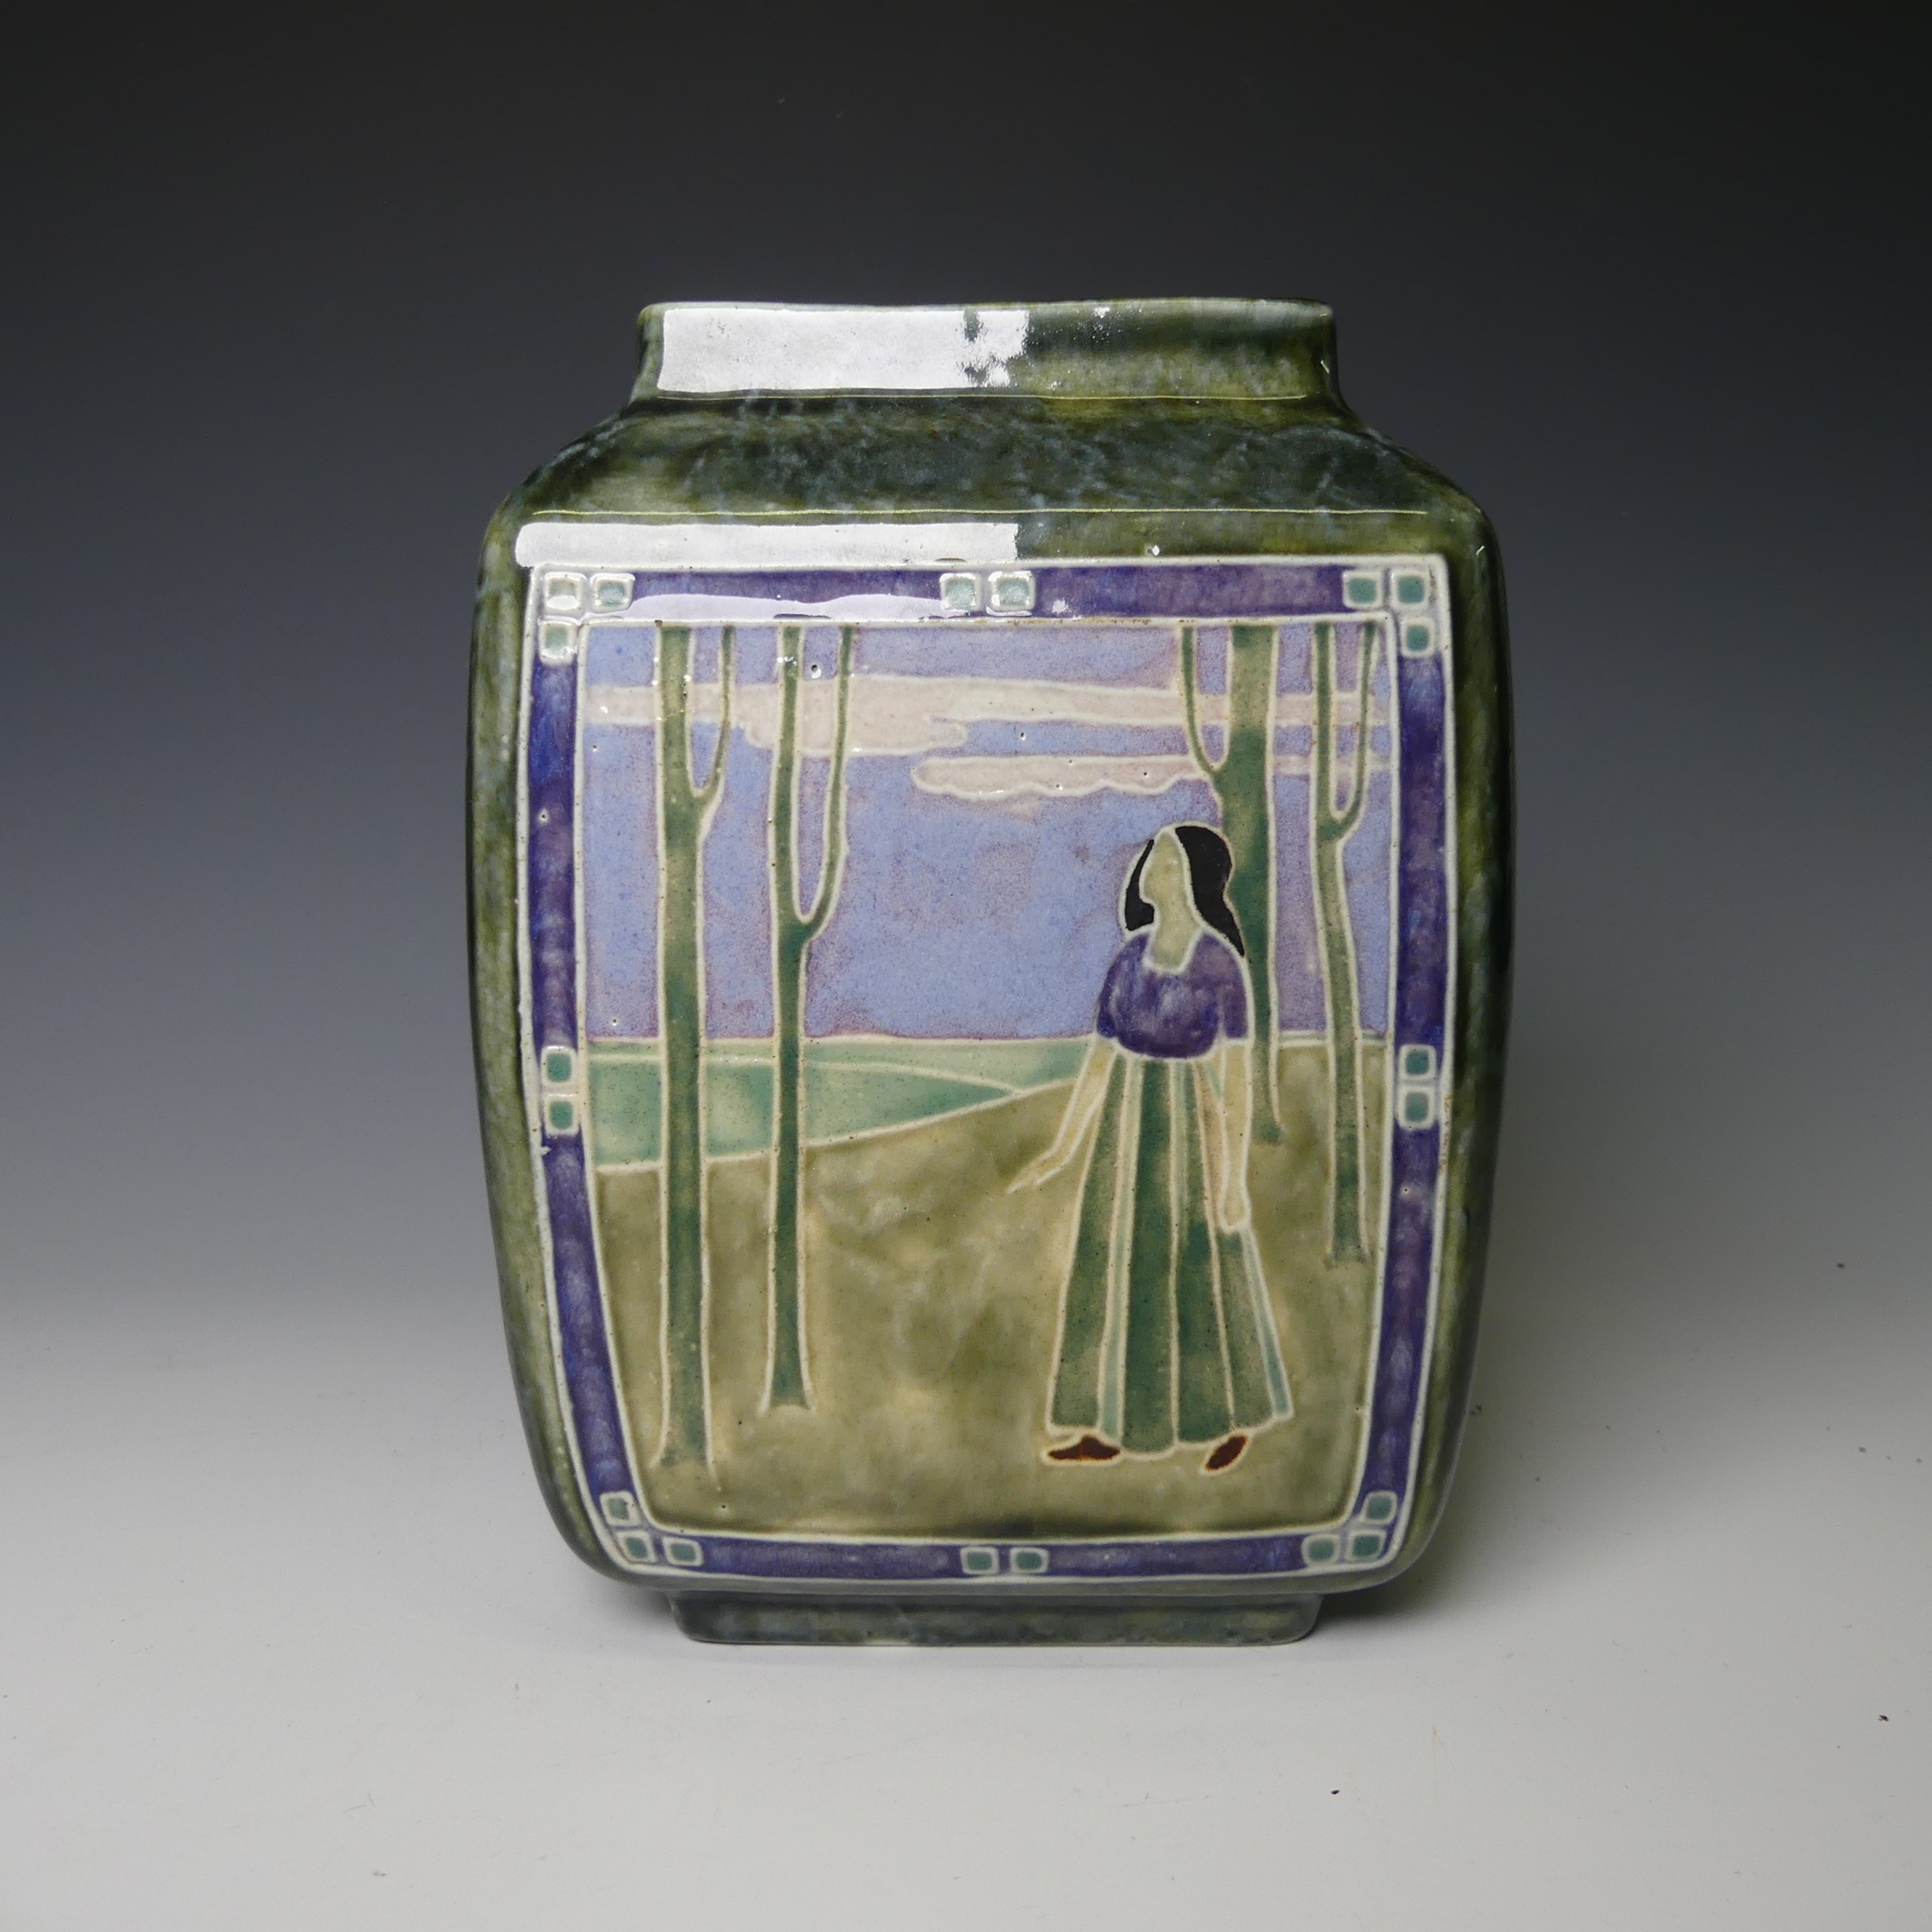 Leslie Harradine (1887-1965) for Royal Doulton, a stoneware Art Nouveau square Vase, depicting a